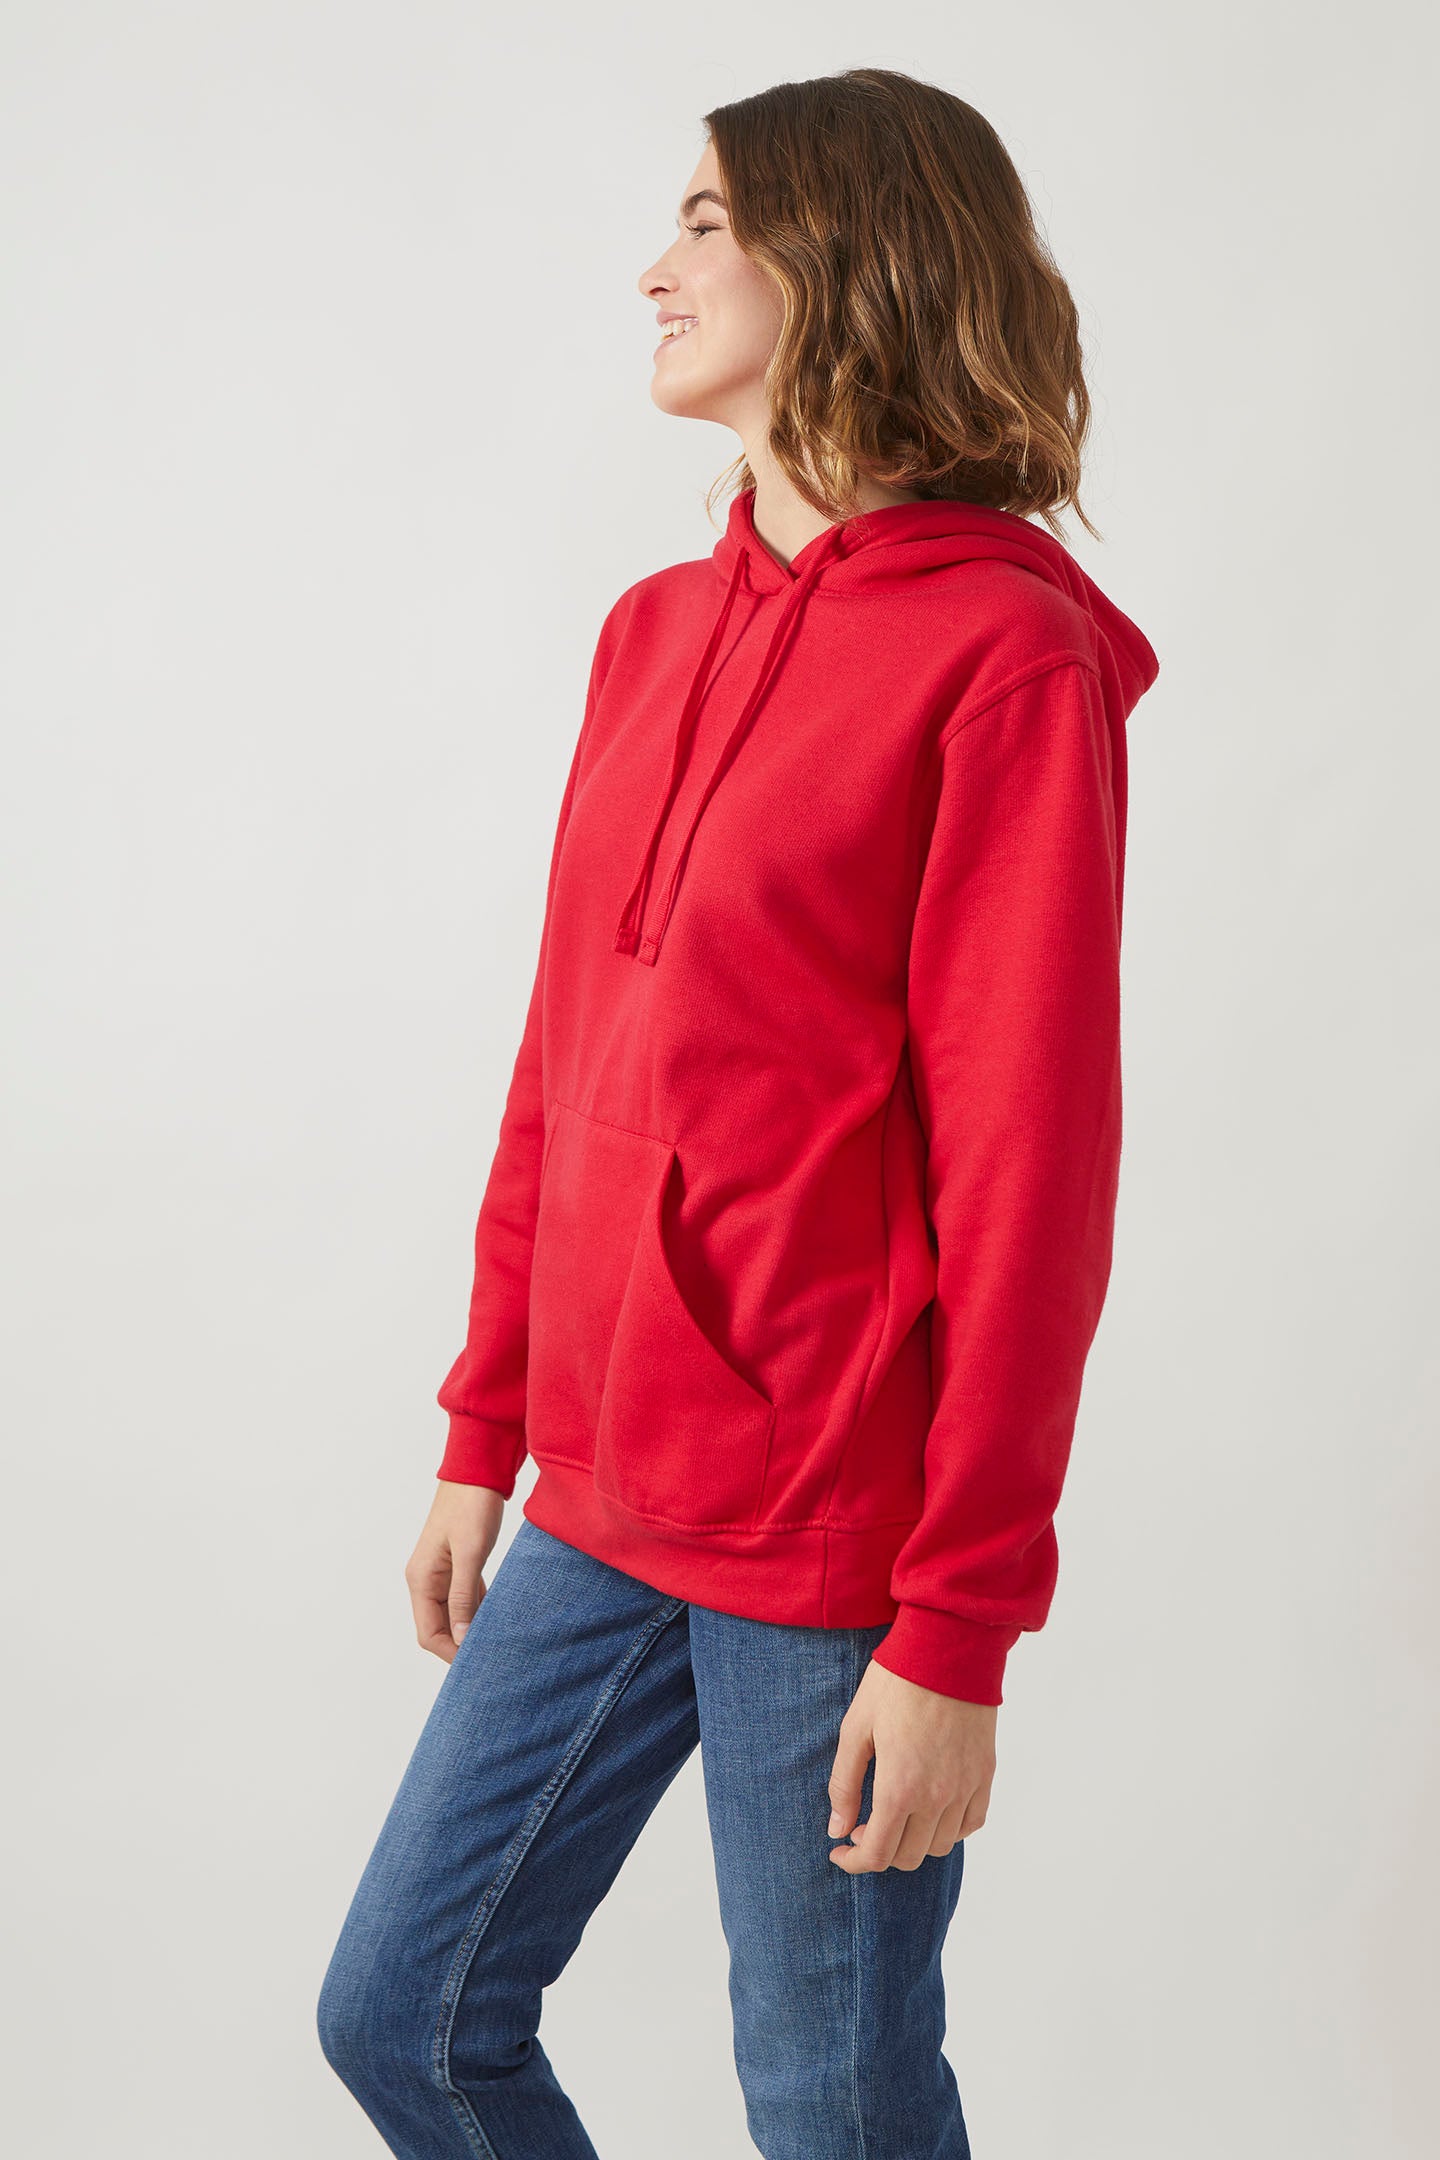 Radsow Apparel - Sweat Shirt à capuche London pour femmes Rouge - Radsow Apparel 